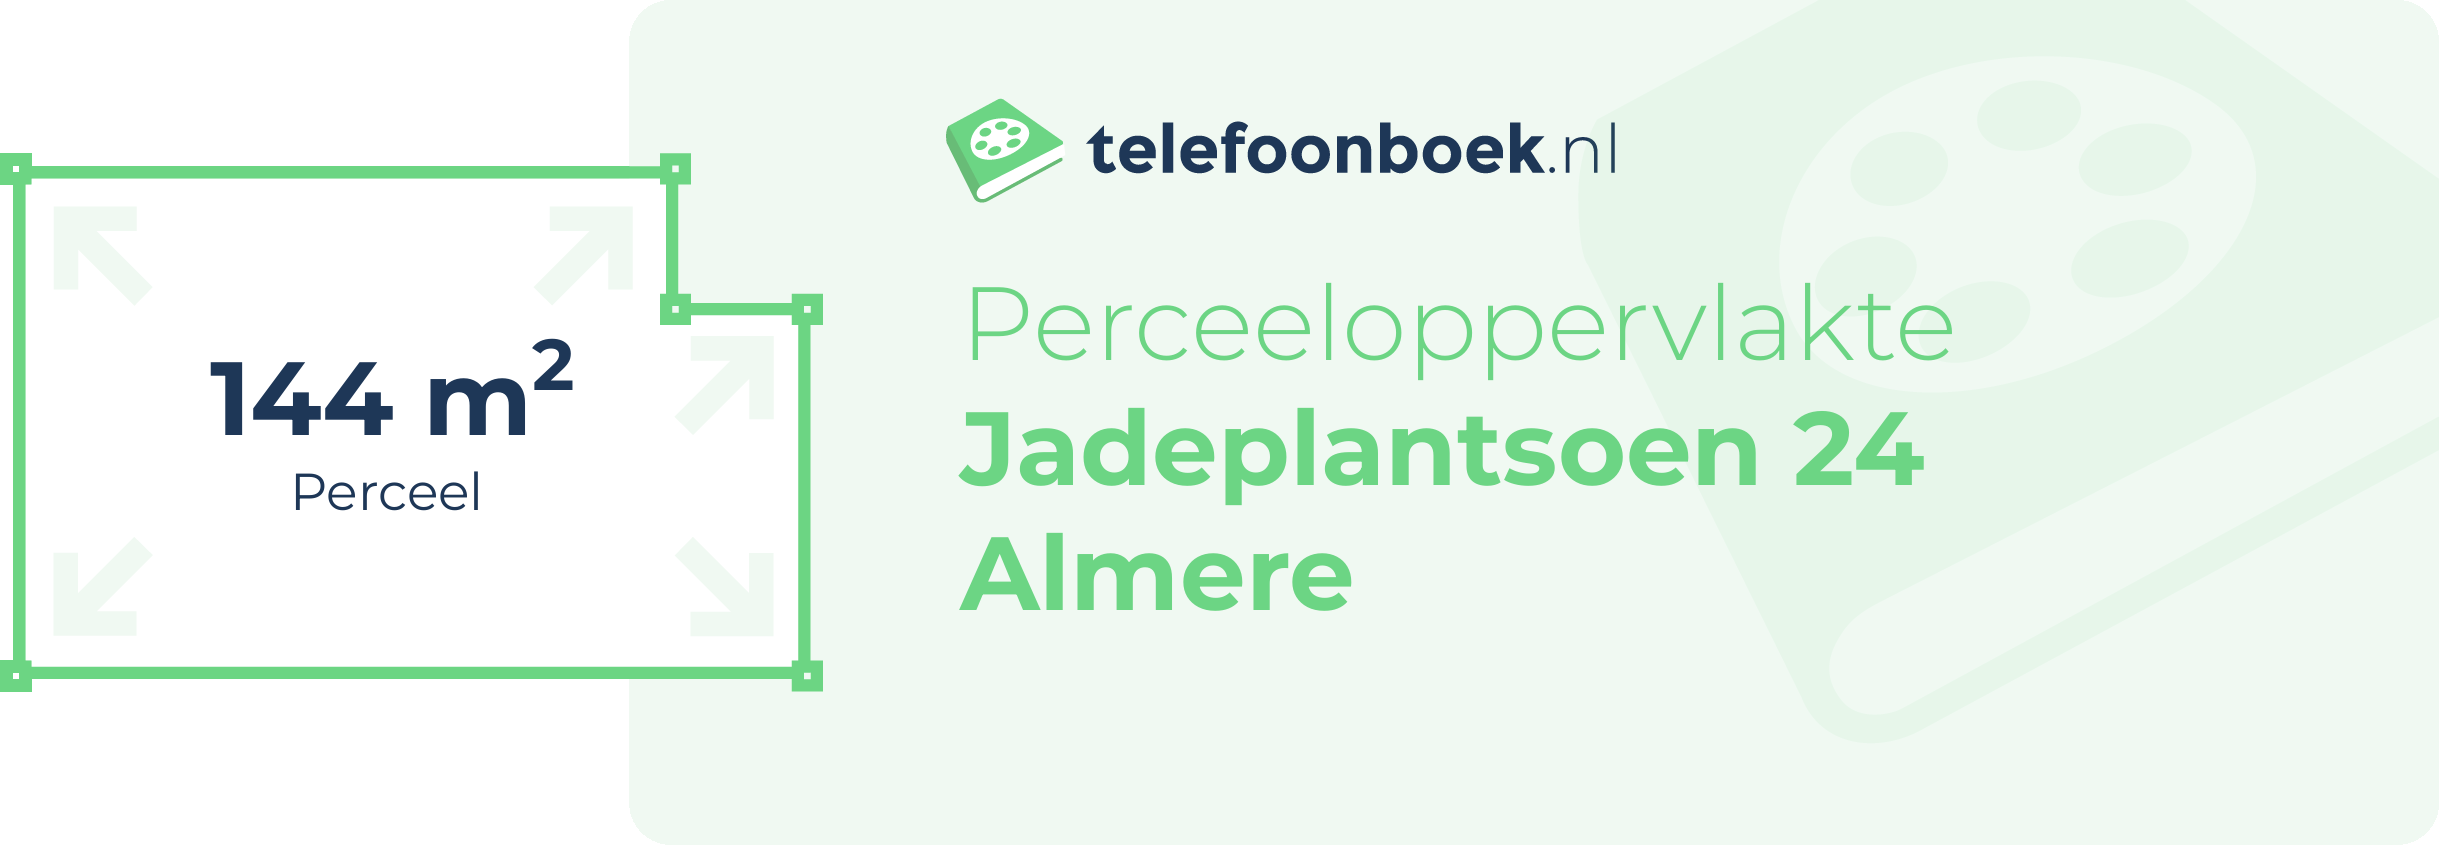 Perceeloppervlakte Jadeplantsoen 24 Almere